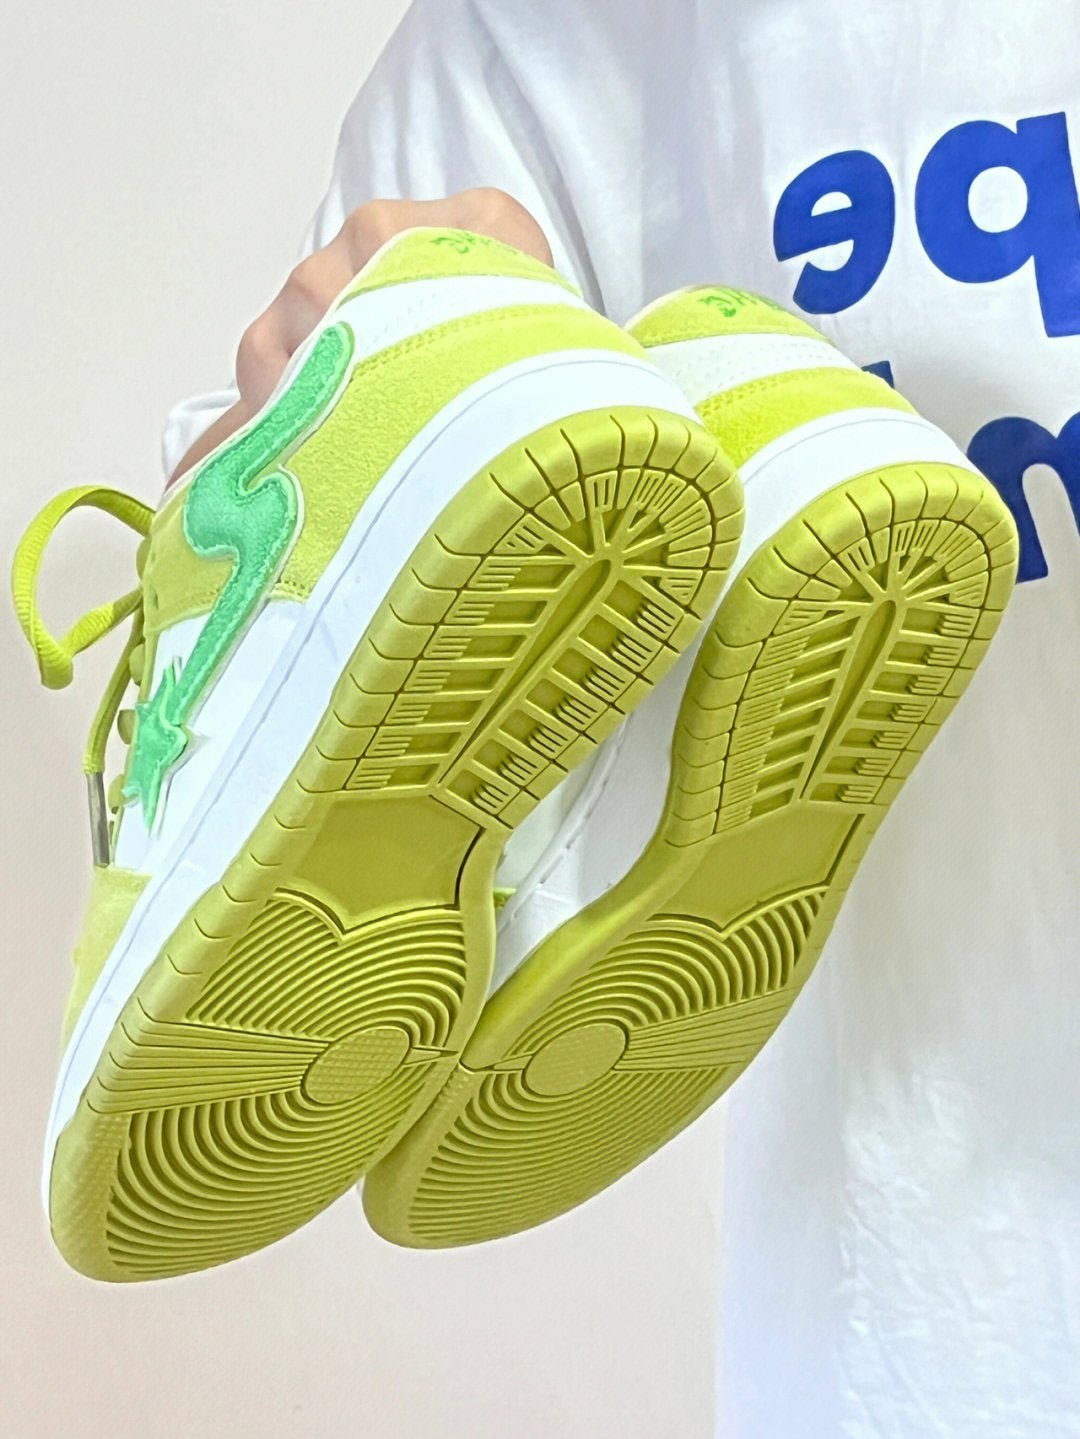 Apple Green Retro Casual Sneakers Men's Platform Sneaker - NextthinkShop0CJYD189220201AZ0